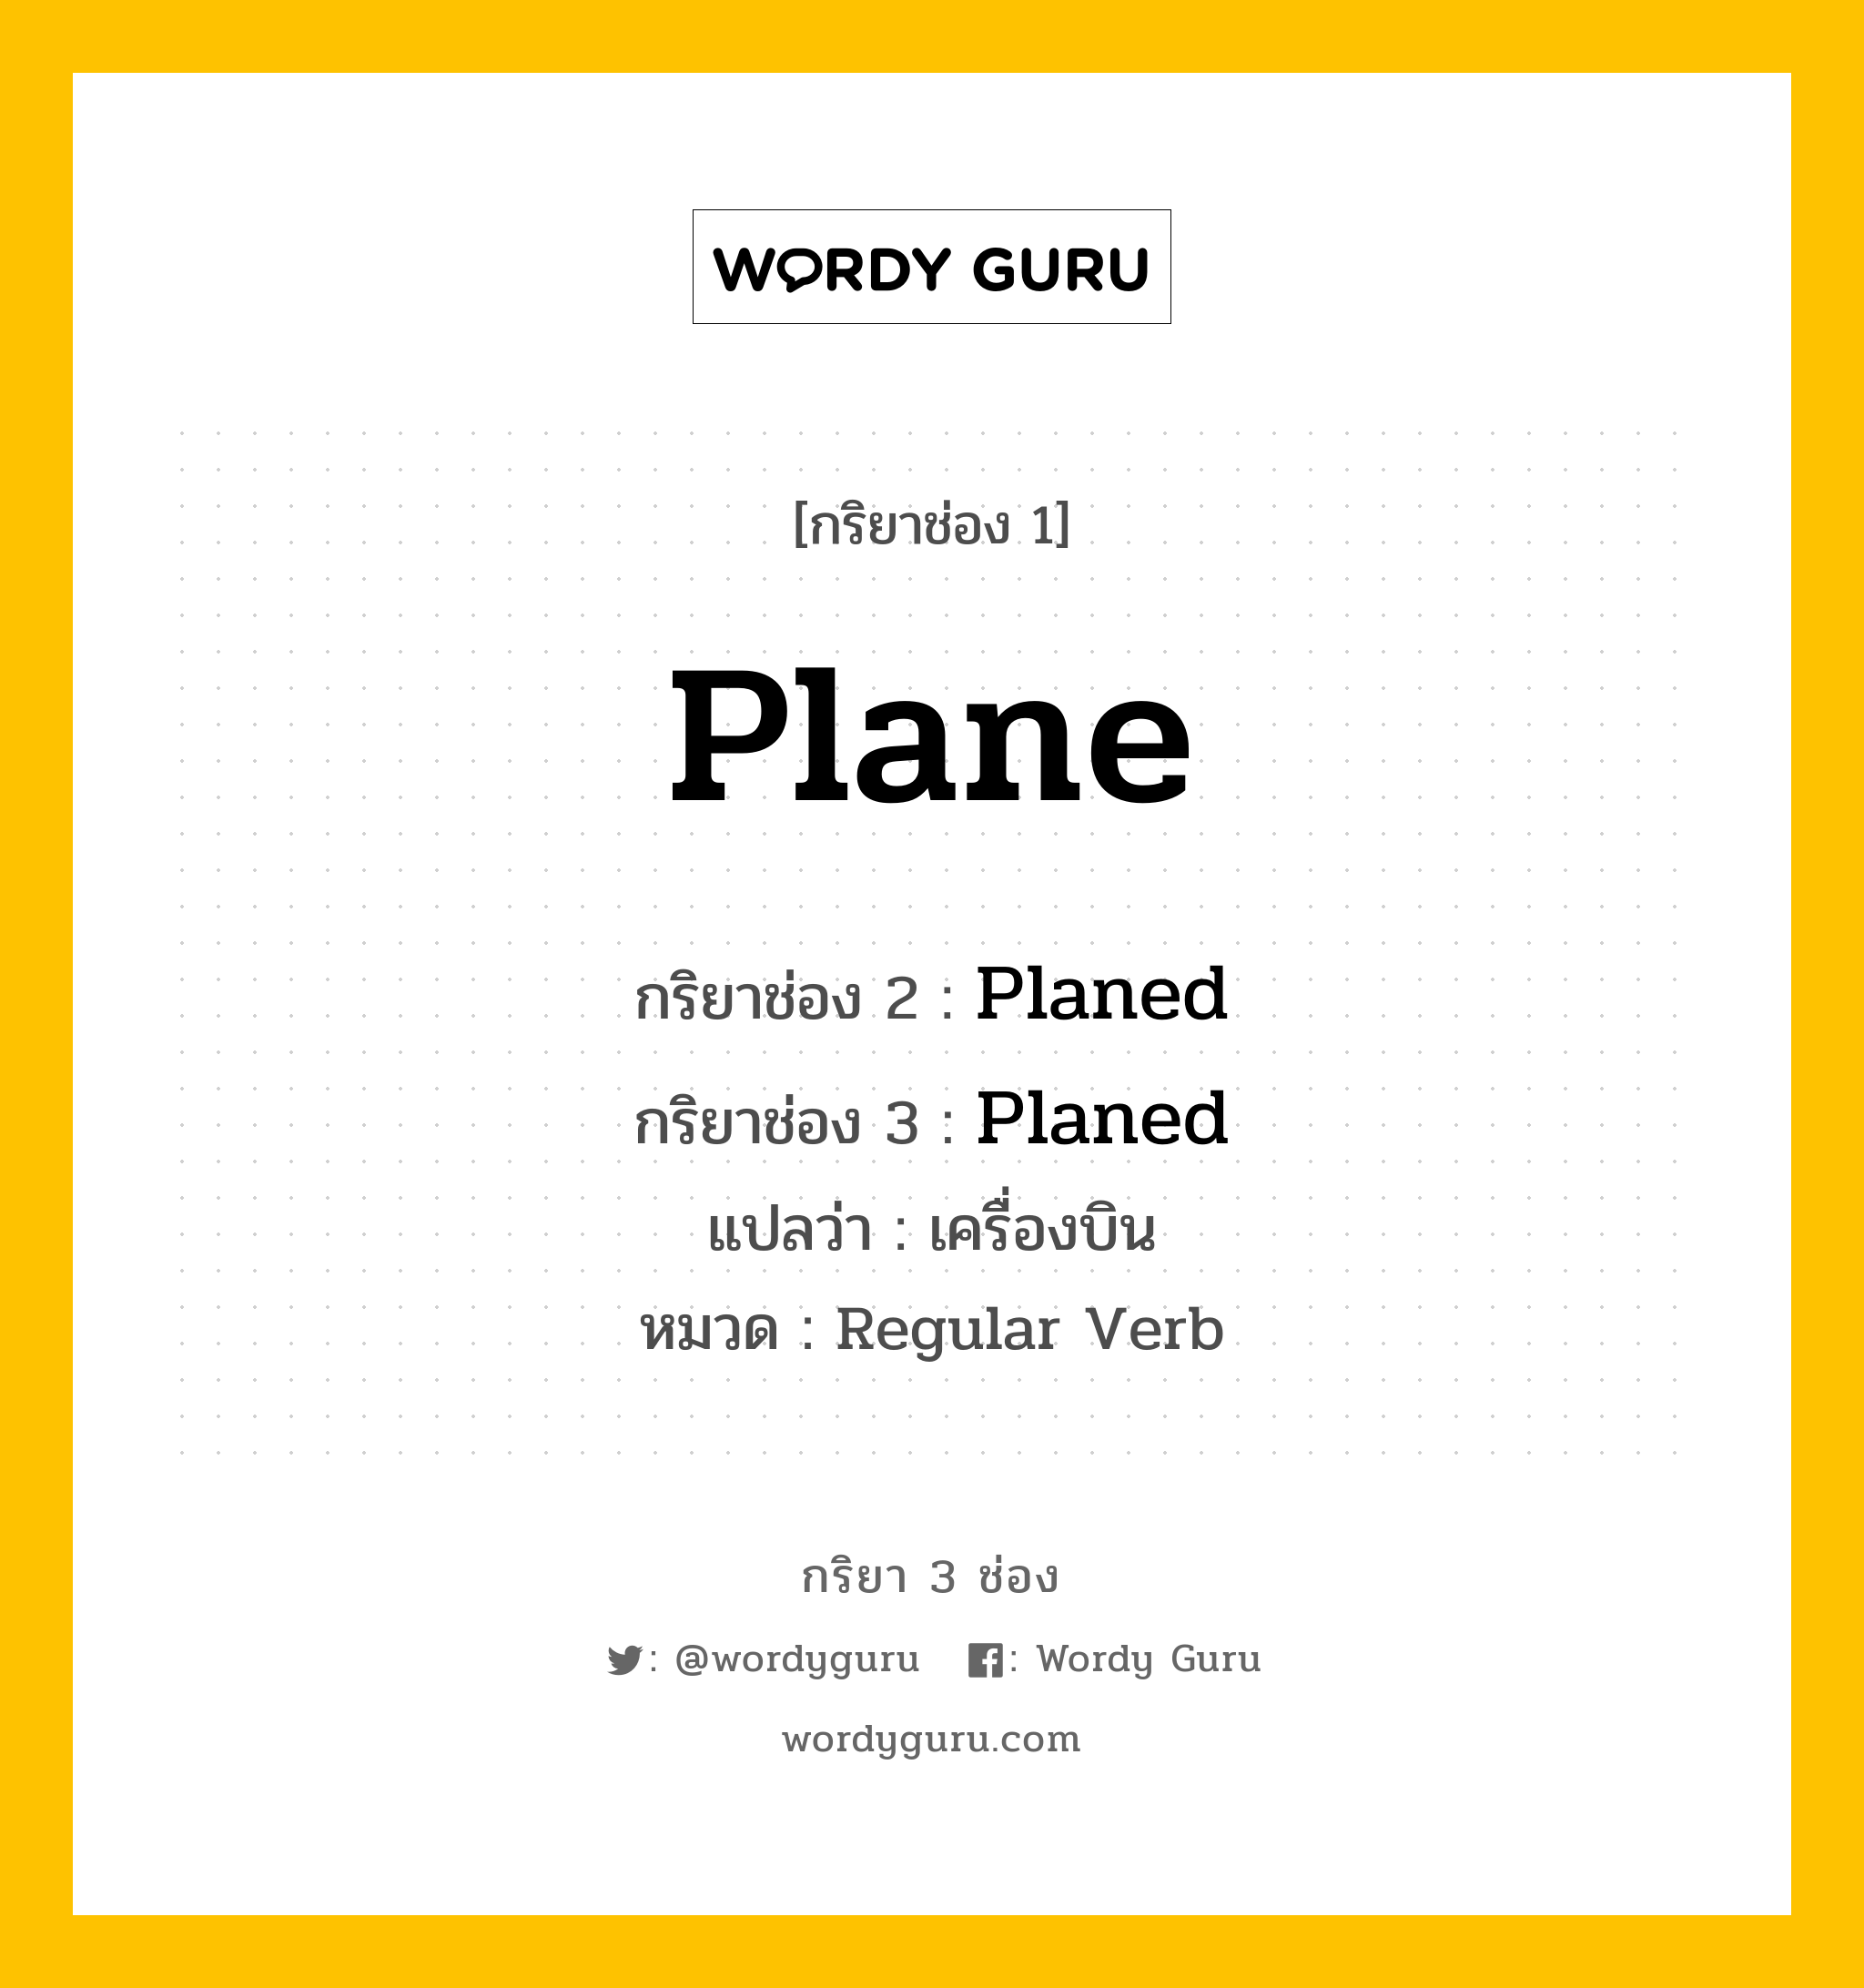 กริยา 3 ช่อง: Plane ช่อง 2 Plane ช่อง 3 คืออะไร, กริยาช่อง 1 Plane กริยาช่อง 2 Planed กริยาช่อง 3 Planed แปลว่า เครื่องบิน หมวด Regular Verb หมวด Regular Verb